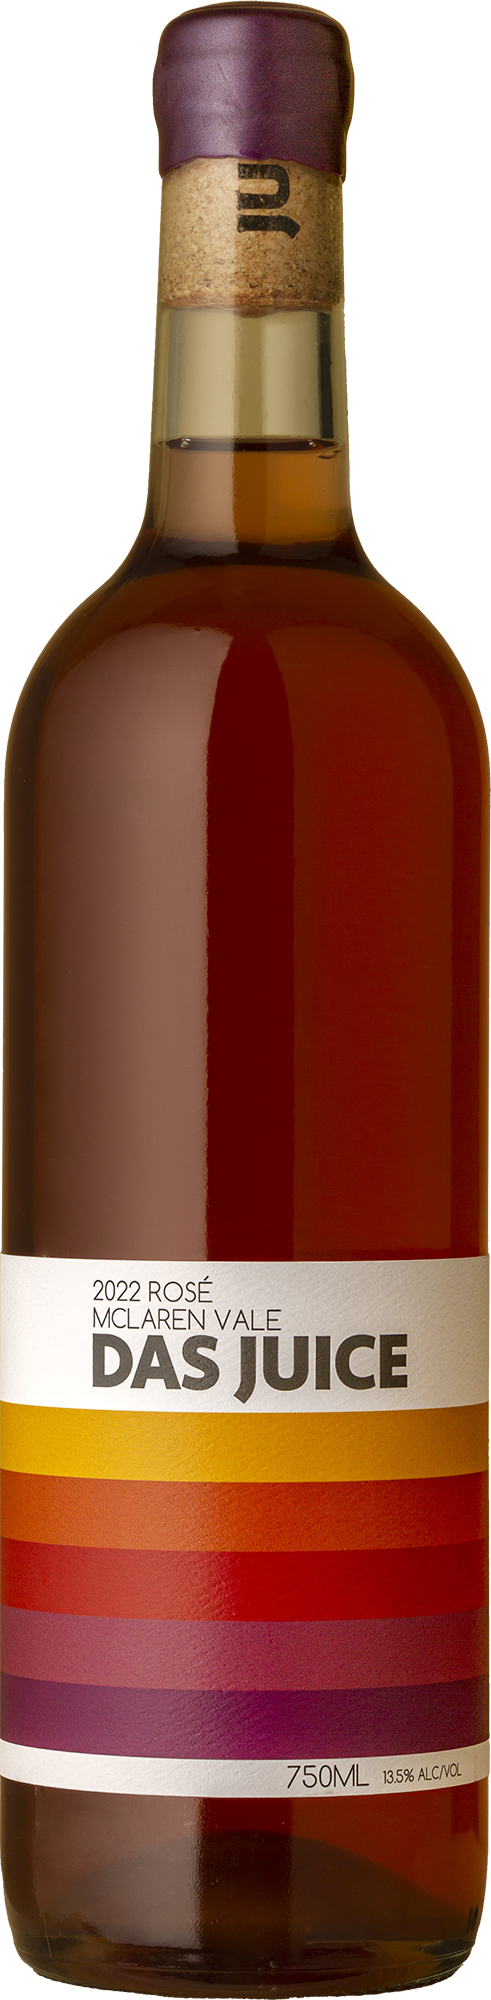 Das Juice - Rosé 2022 Rosé